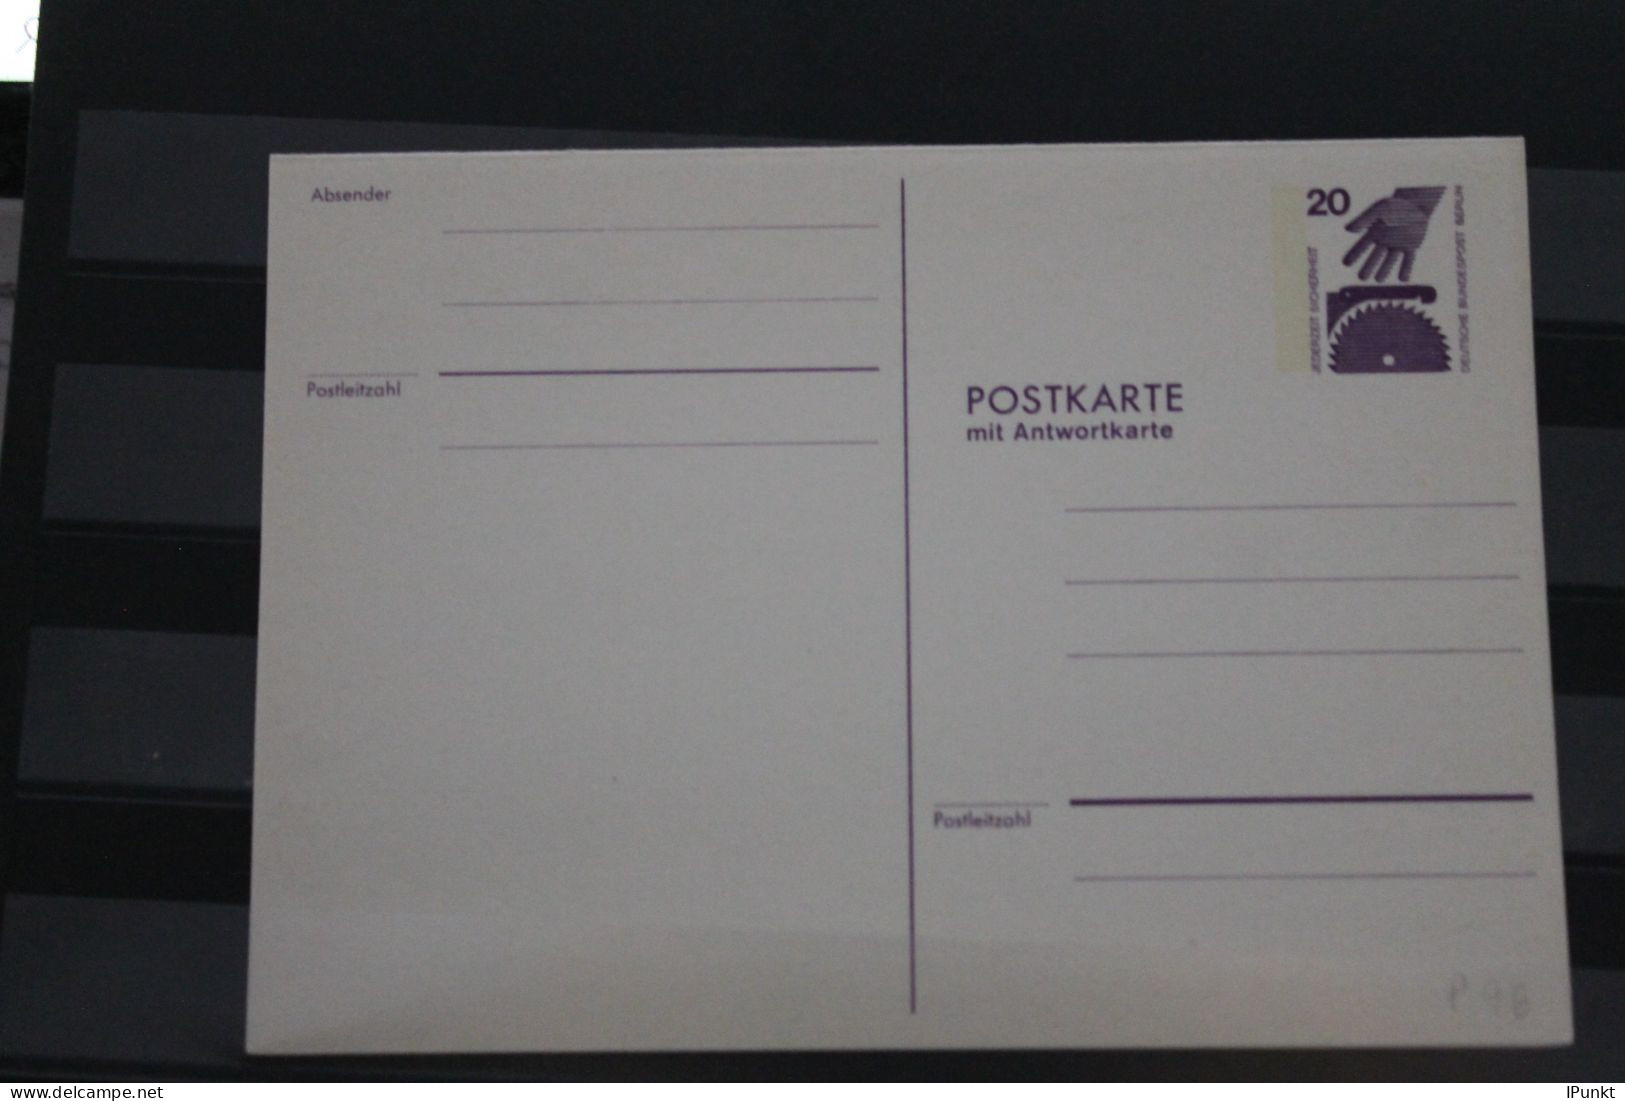 Berlin 1974; Ganzsache Unfallverhütung Postkarte Mit Antwortkarte   P 96; Ungebraucht - Postkaarten - Ongebruikt